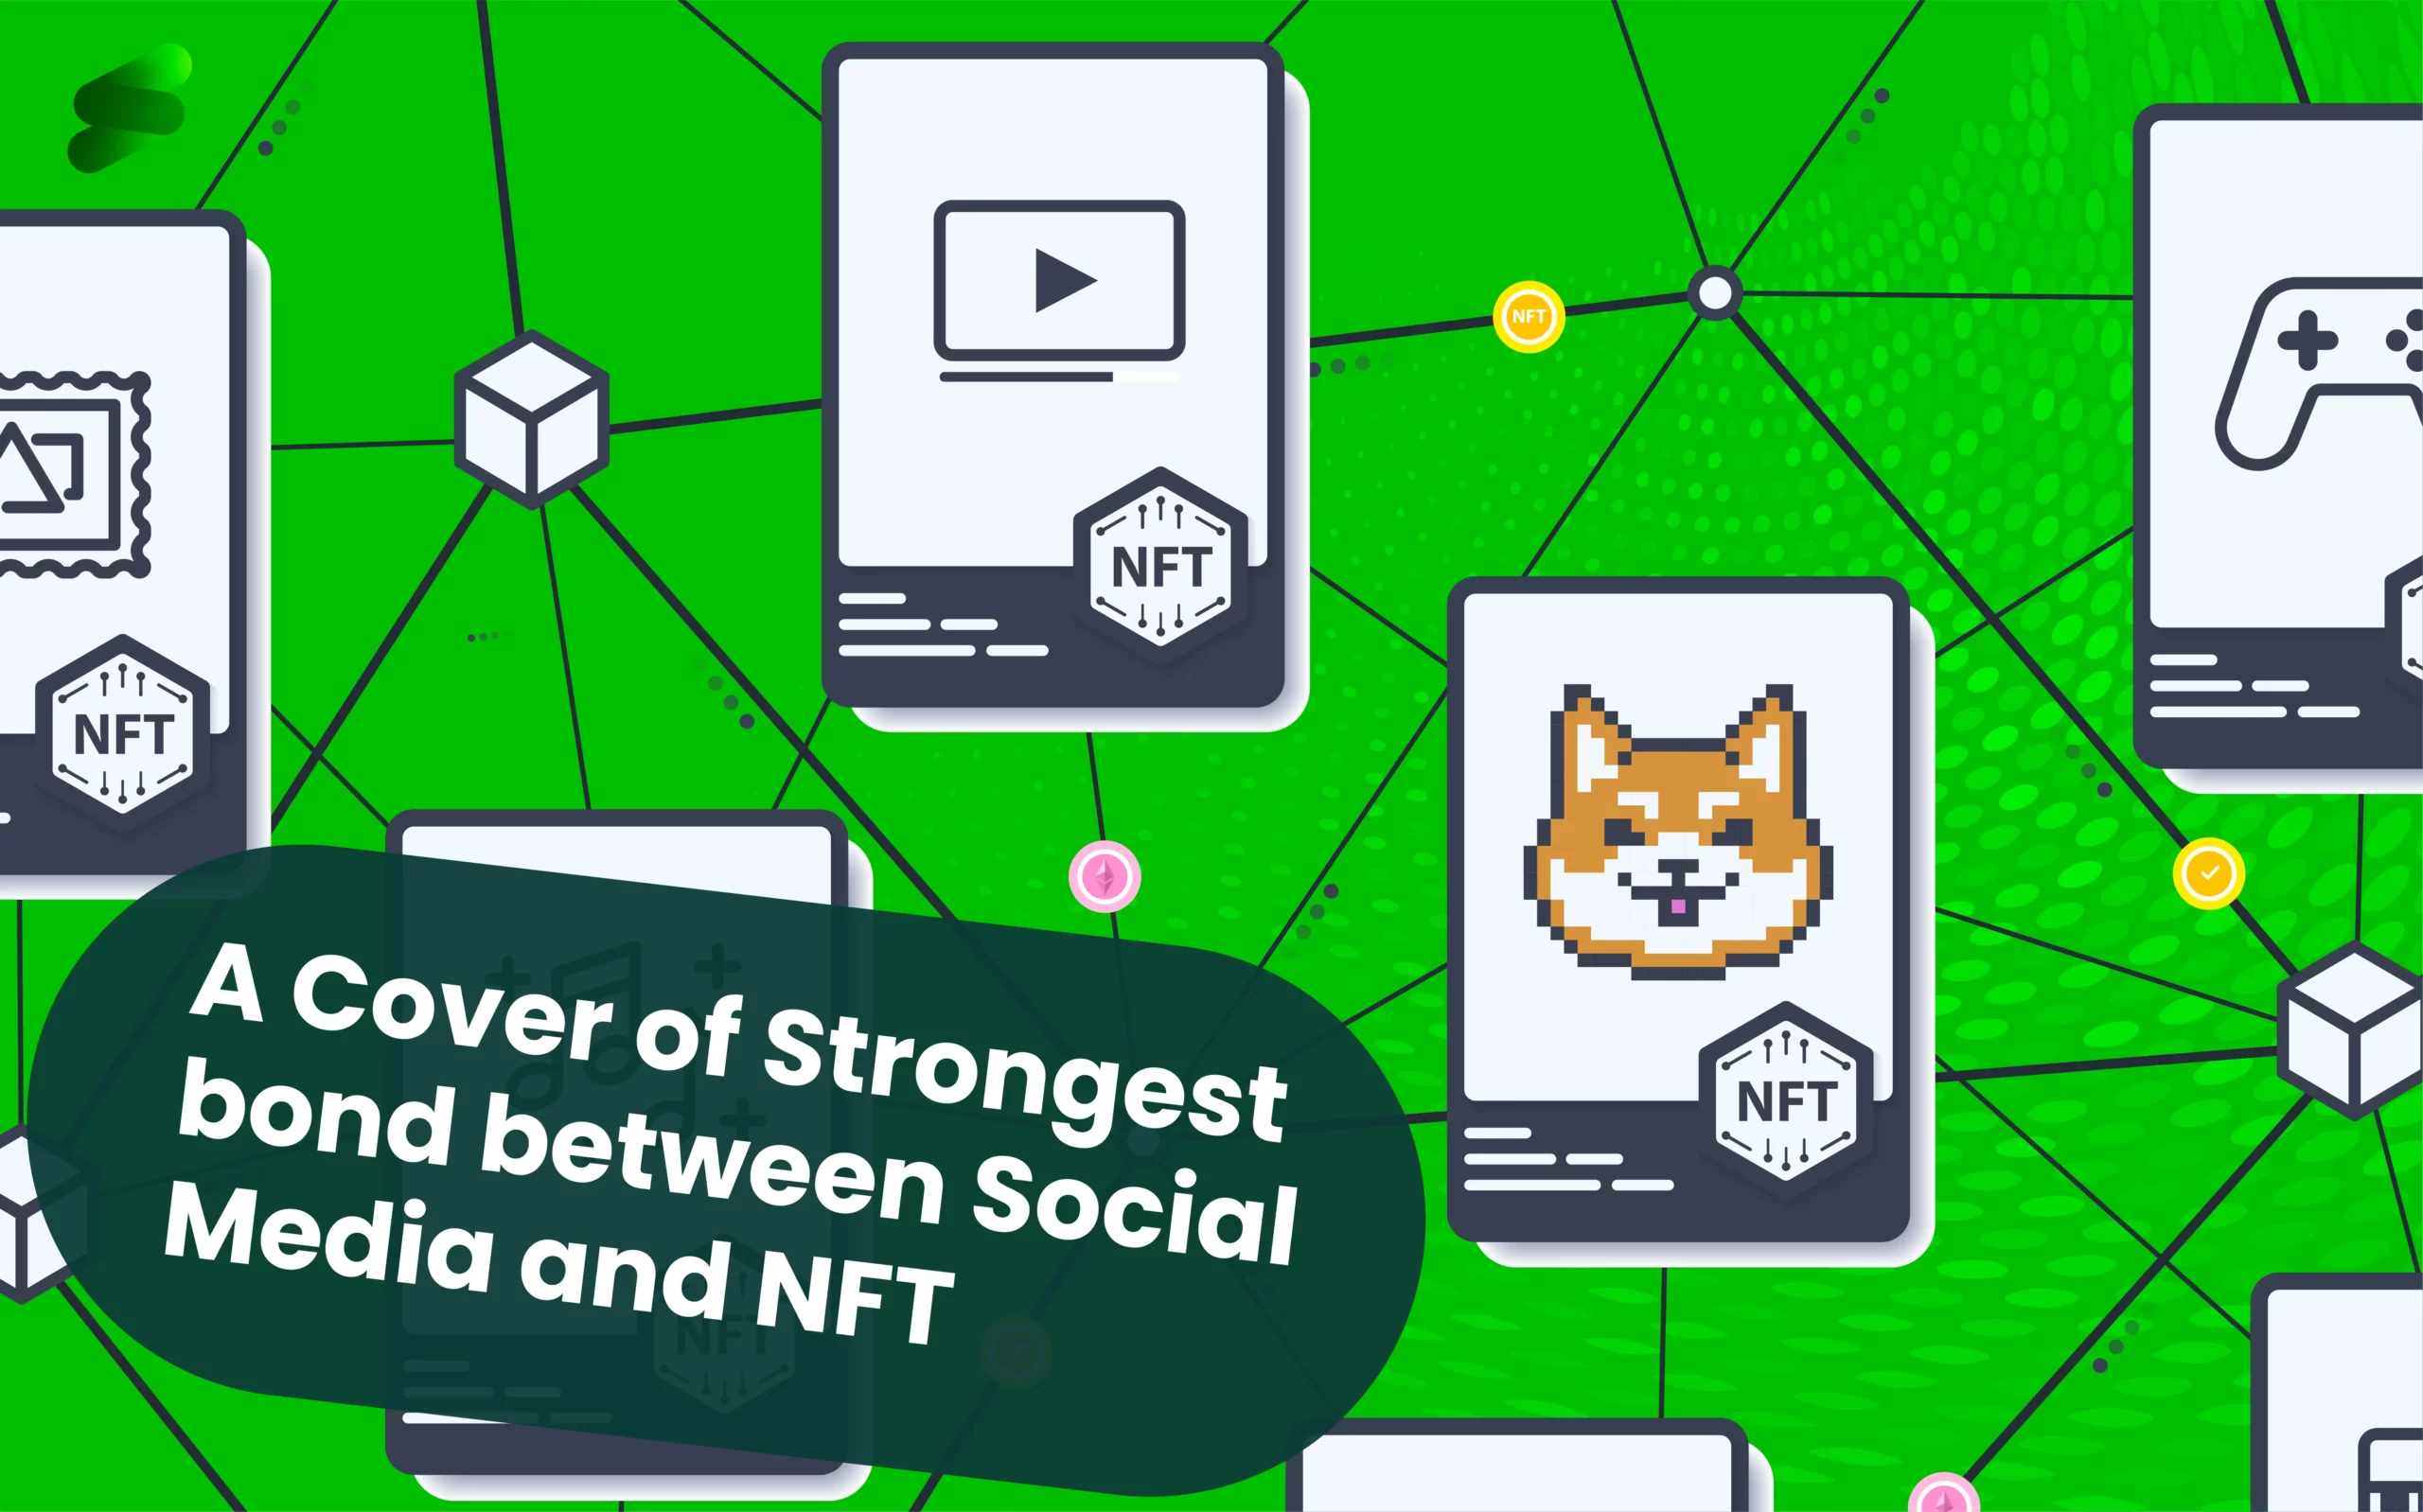 Social Media and NFT